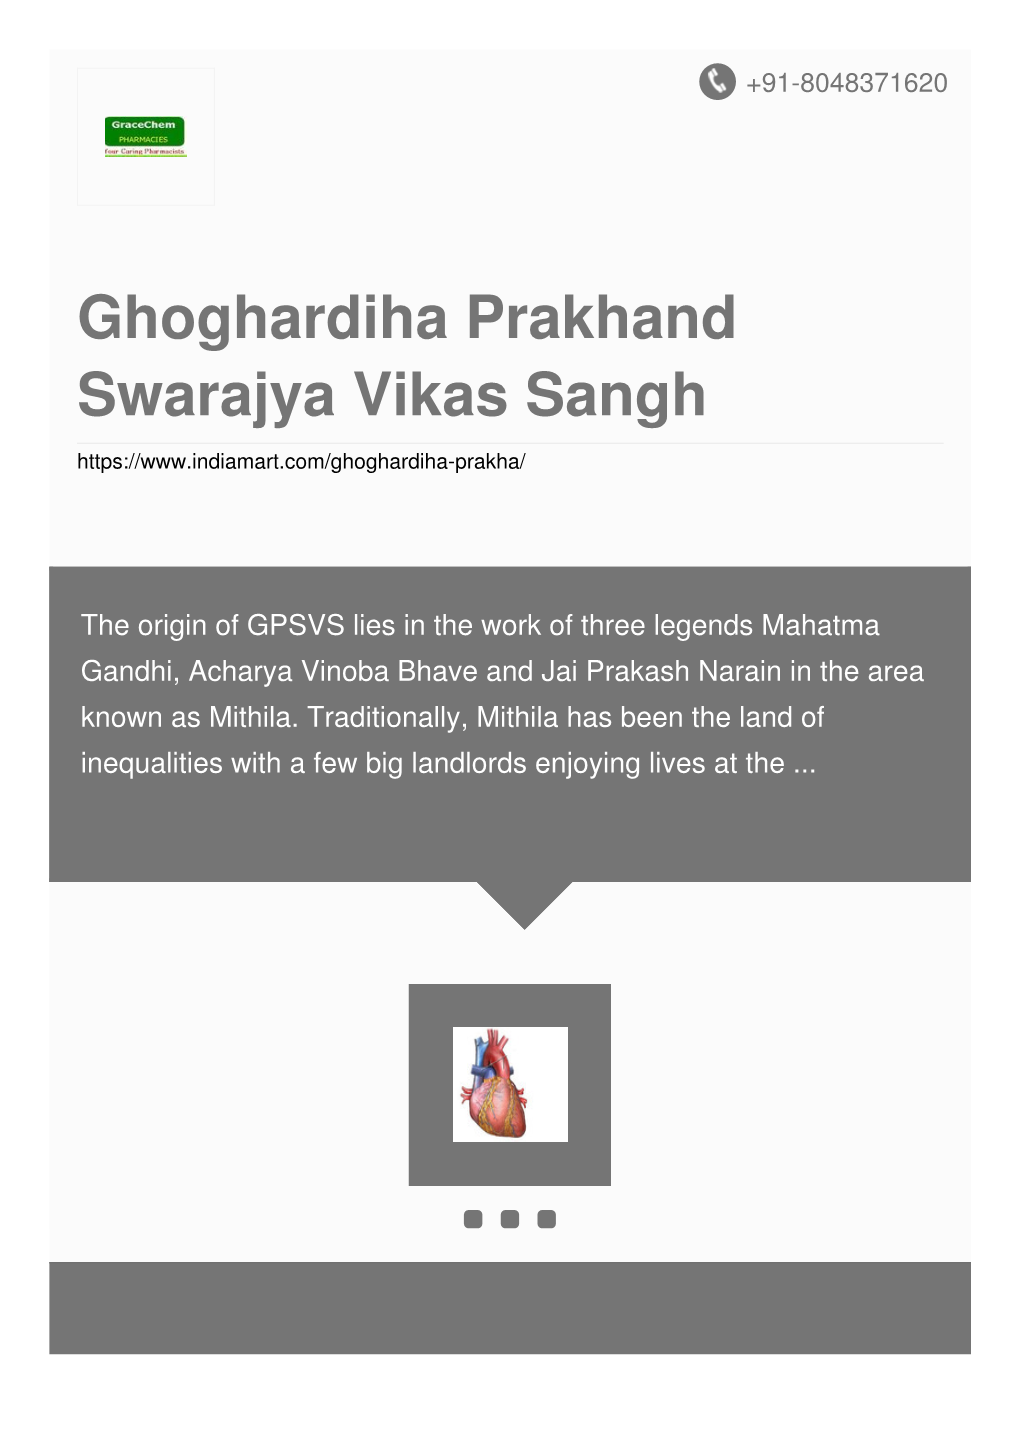 Ghoghardiha Prakhand Swarajya Vikas Sangh